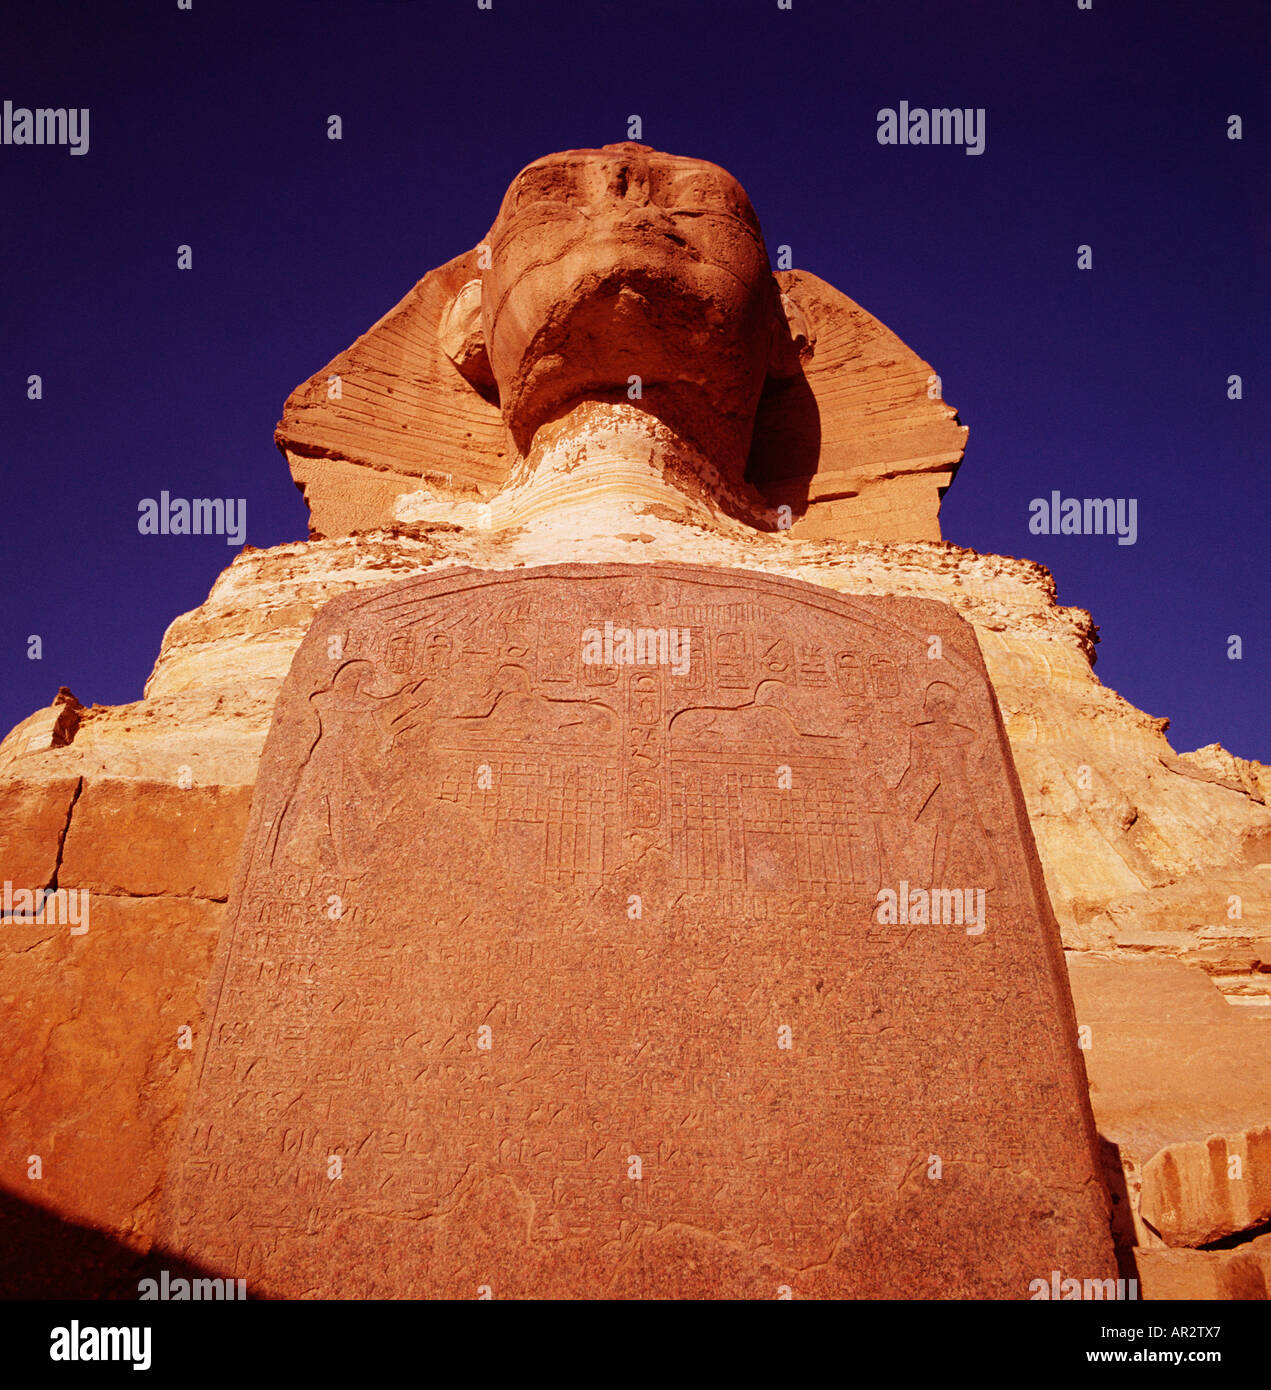 Die Sphinx in Ägypten, Gizeh, Kairo, Nord Afrika. Dramatische Nahaufnahme bei Sonnenaufgang, Birds Eye View suchen der Traum Stele zu Kopf. Unesco-Welterbe Stockfoto